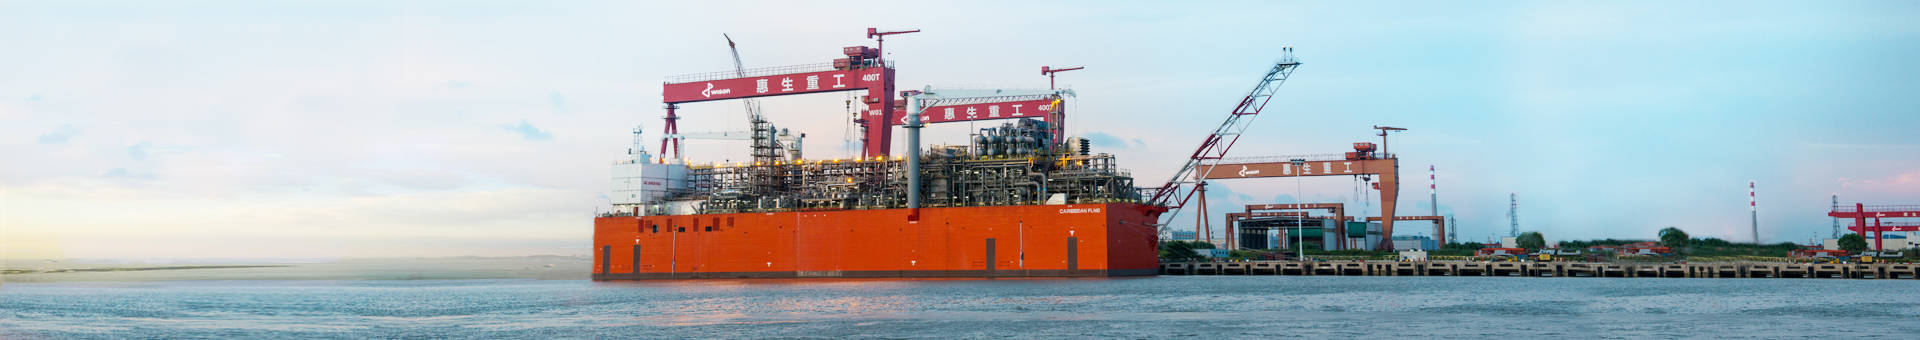 制造|惠生海洋工程大型LNG模块起航运送俄罗斯